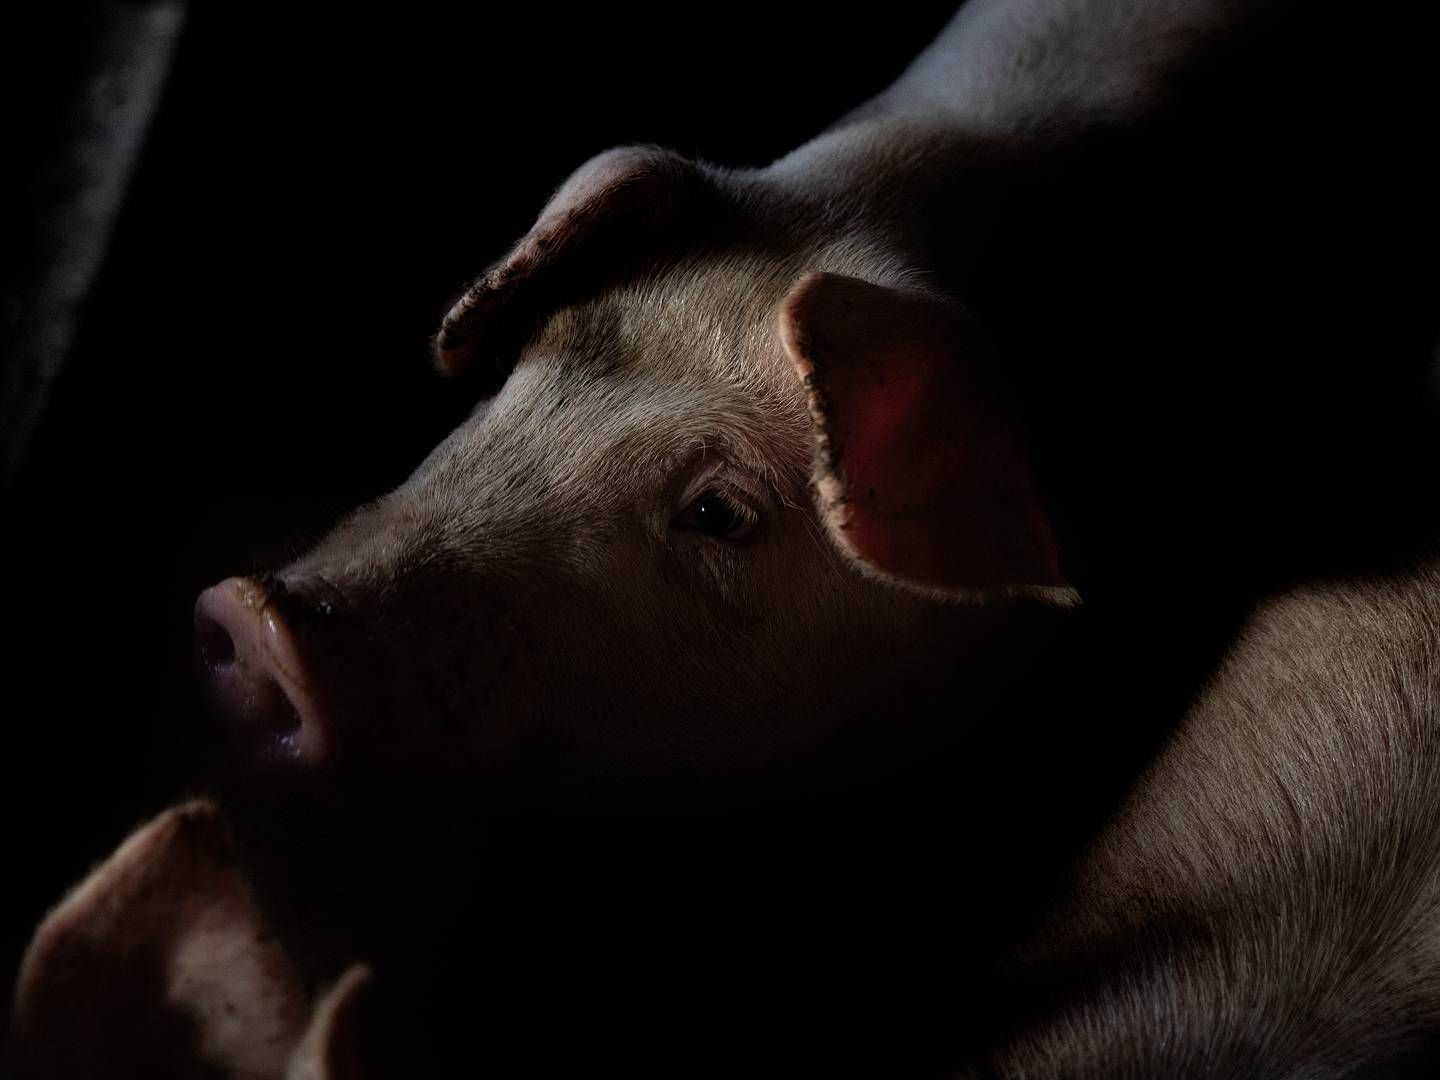 Udsigterne for kinesisk svineproduktion i de kommende år er mørke, mener analytiker Palle Jakobsen fra Agrocom. | Foto: Peter Hove Olesen